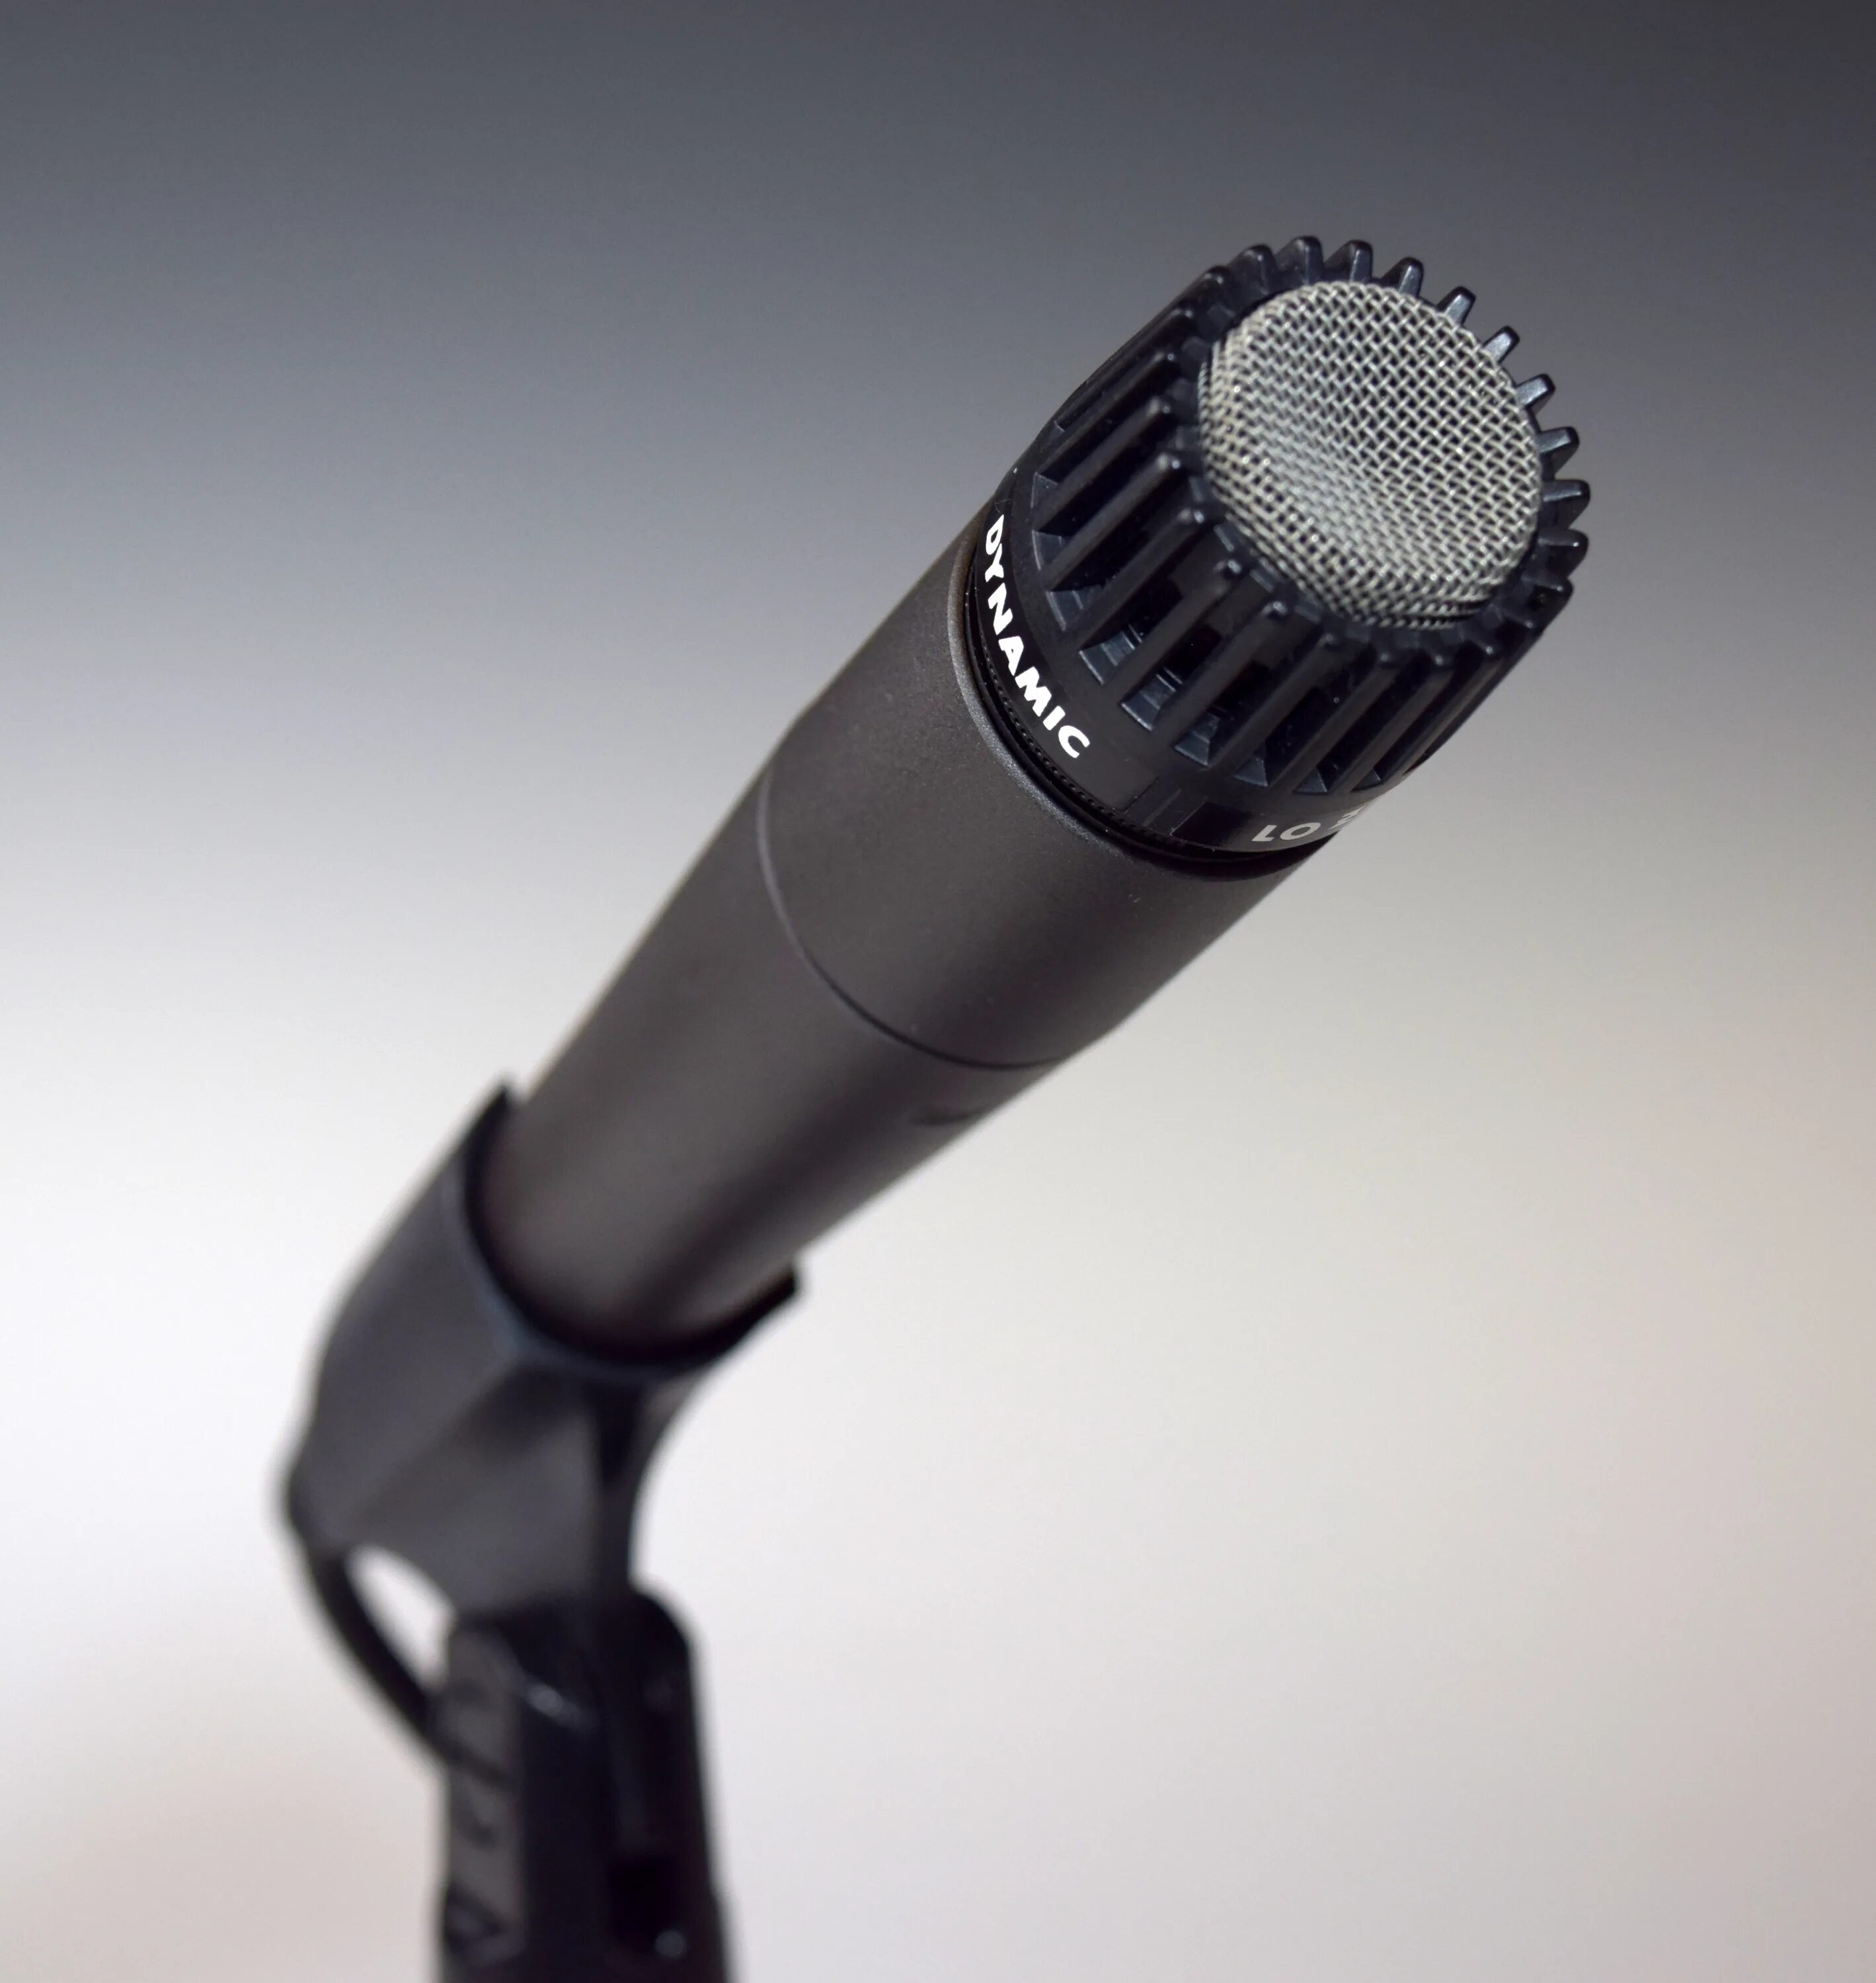 Динамический микрофон AUD-98xlr. Shur mikrafon беспроводной. Микрофон динамический беспроводной. Современные микрофоны. Телефон в качестве микрофона